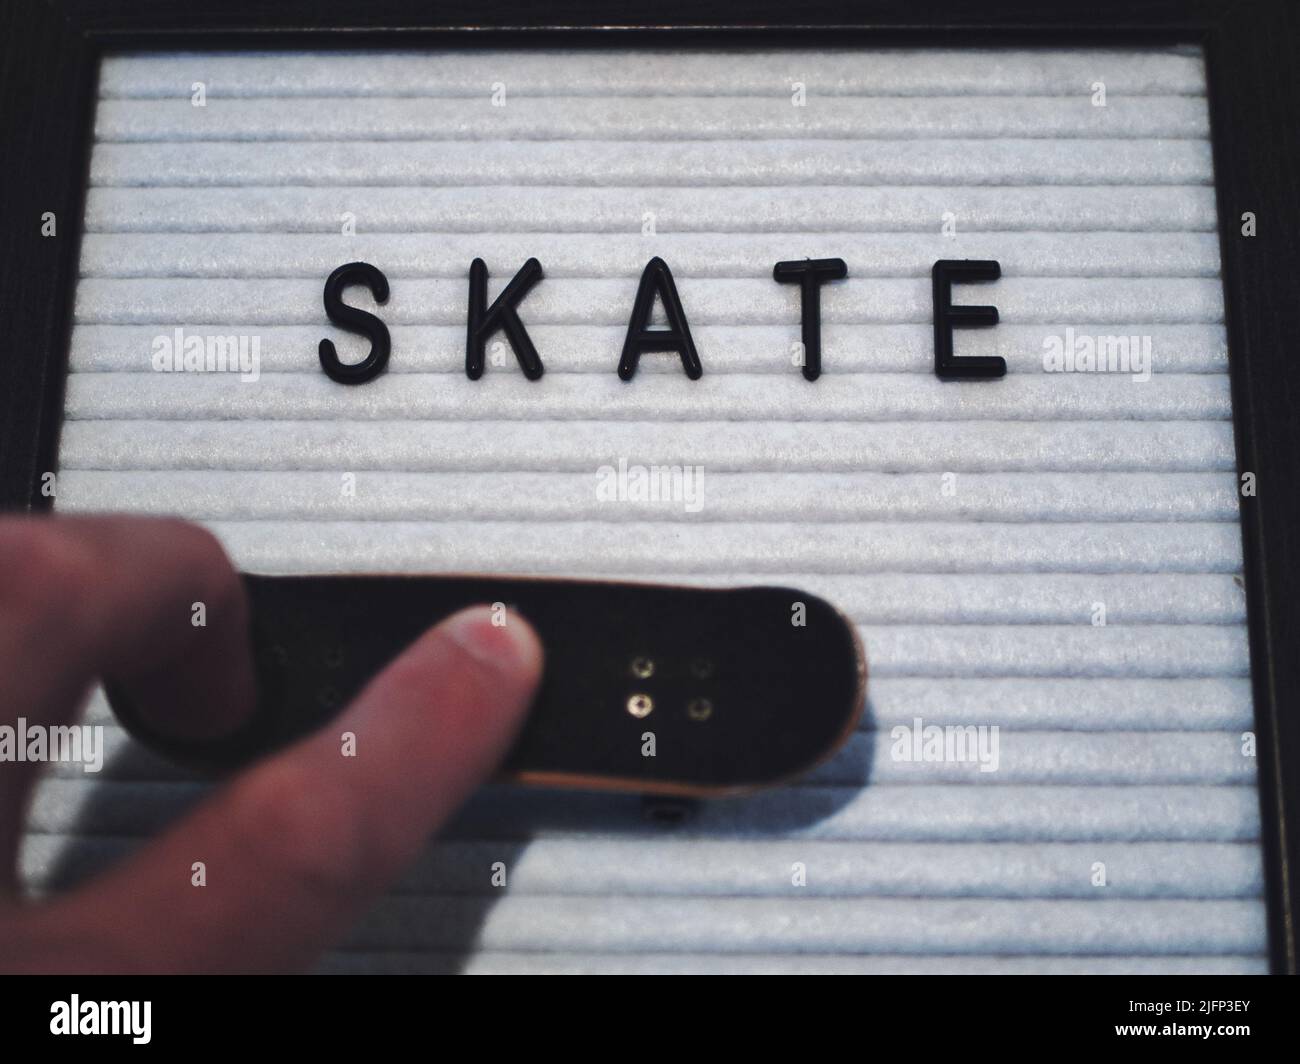 Skate in schwarzem Text. Professioneller Fingerboard-Experte, der einen 360 Kickflip (tre Flip) macht. Lustige Grafik, die Skateboarding in einer lizenzfreien Darstellung illustriert Stockfoto